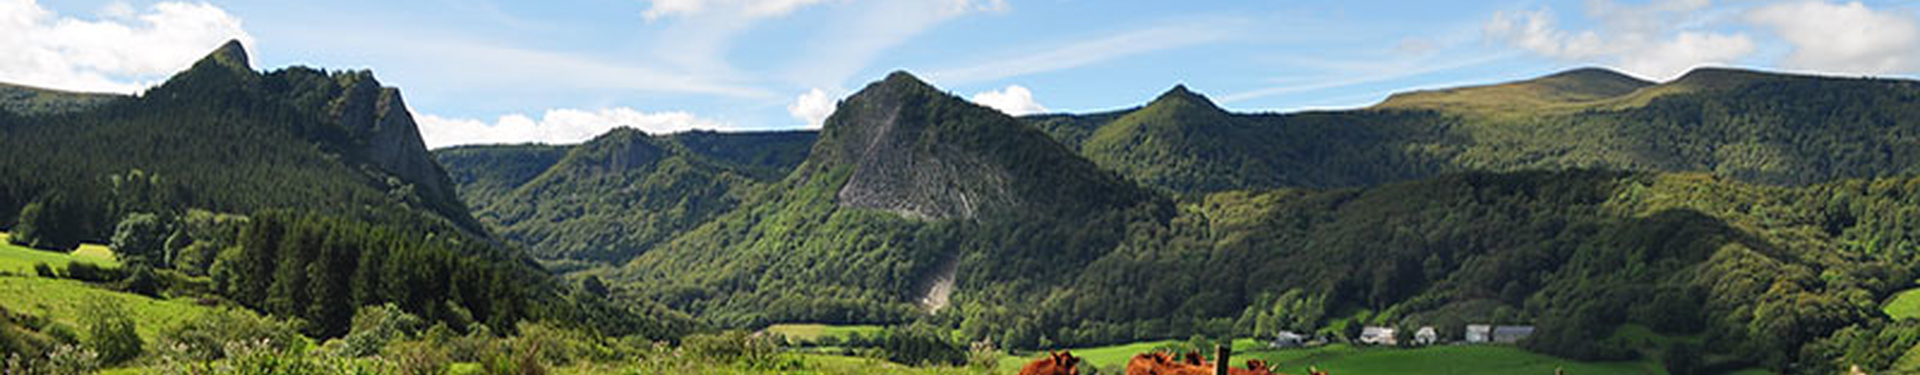 Formulaire de demande de devis - 4 jours sur les volcans d'Auvergne - 3 nuits en hôtel | Aluna Voyages